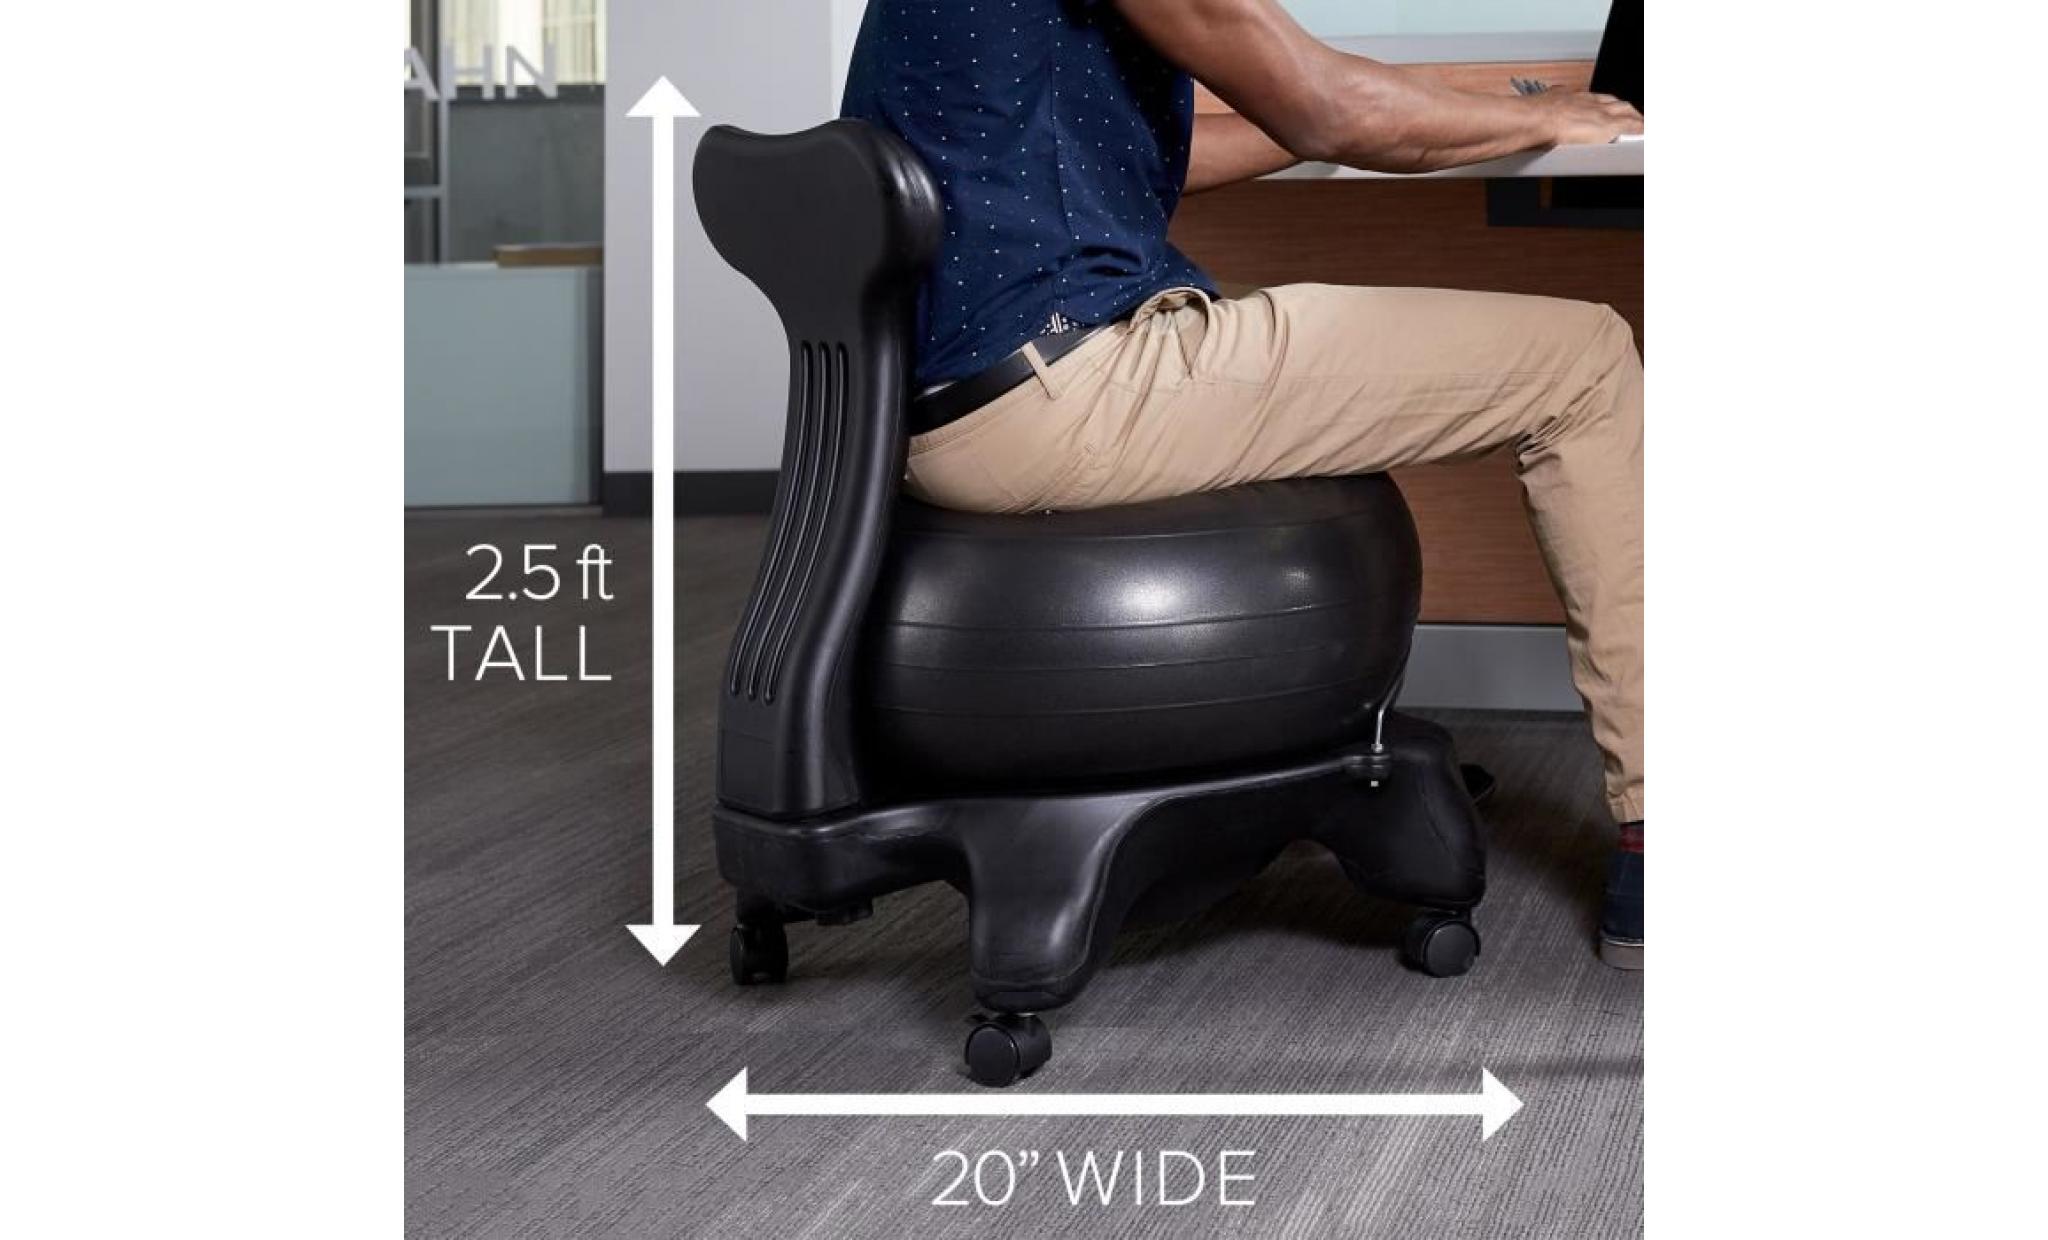 classique balance ball chair   yoga exercice stability ball haut de gamme chaise ergonomique pour la maison et offi gcbnu pas cher